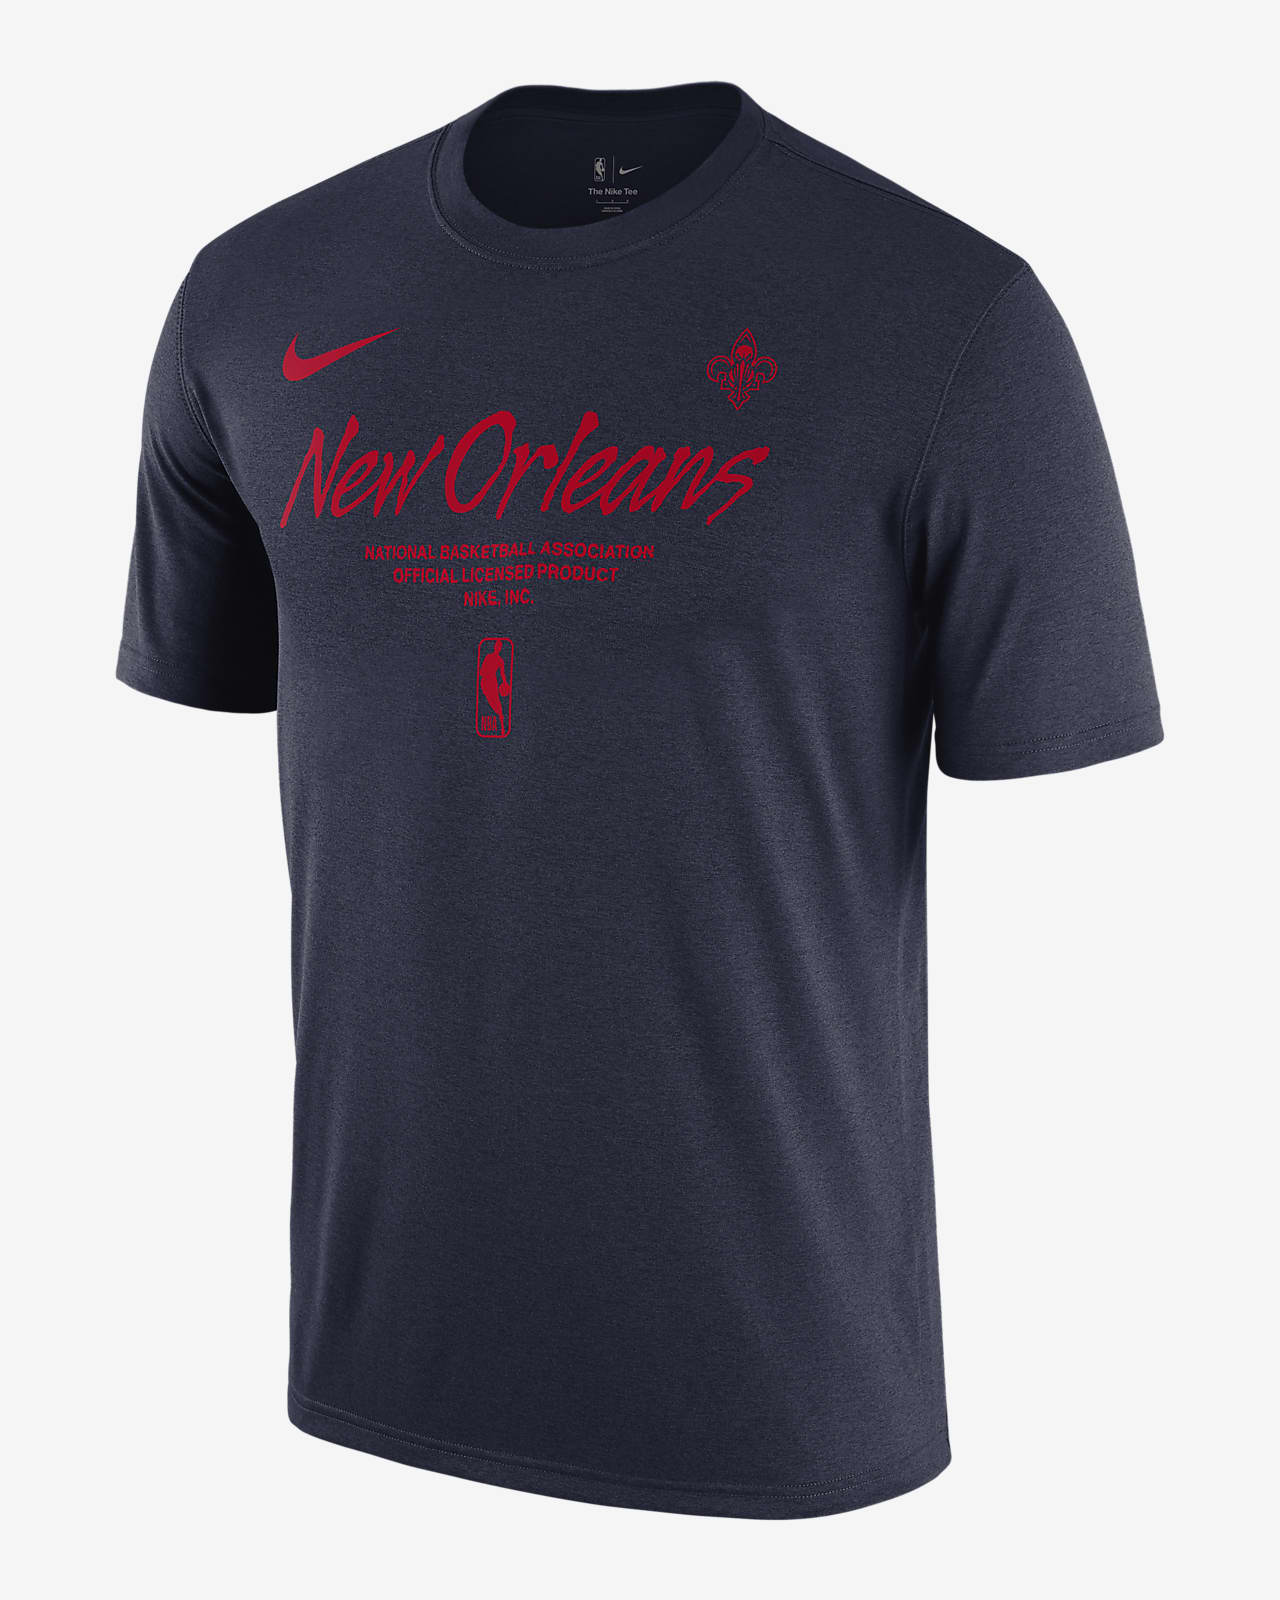 Playera Nike de la NBA para hombre New Orleans Pelicans Essential